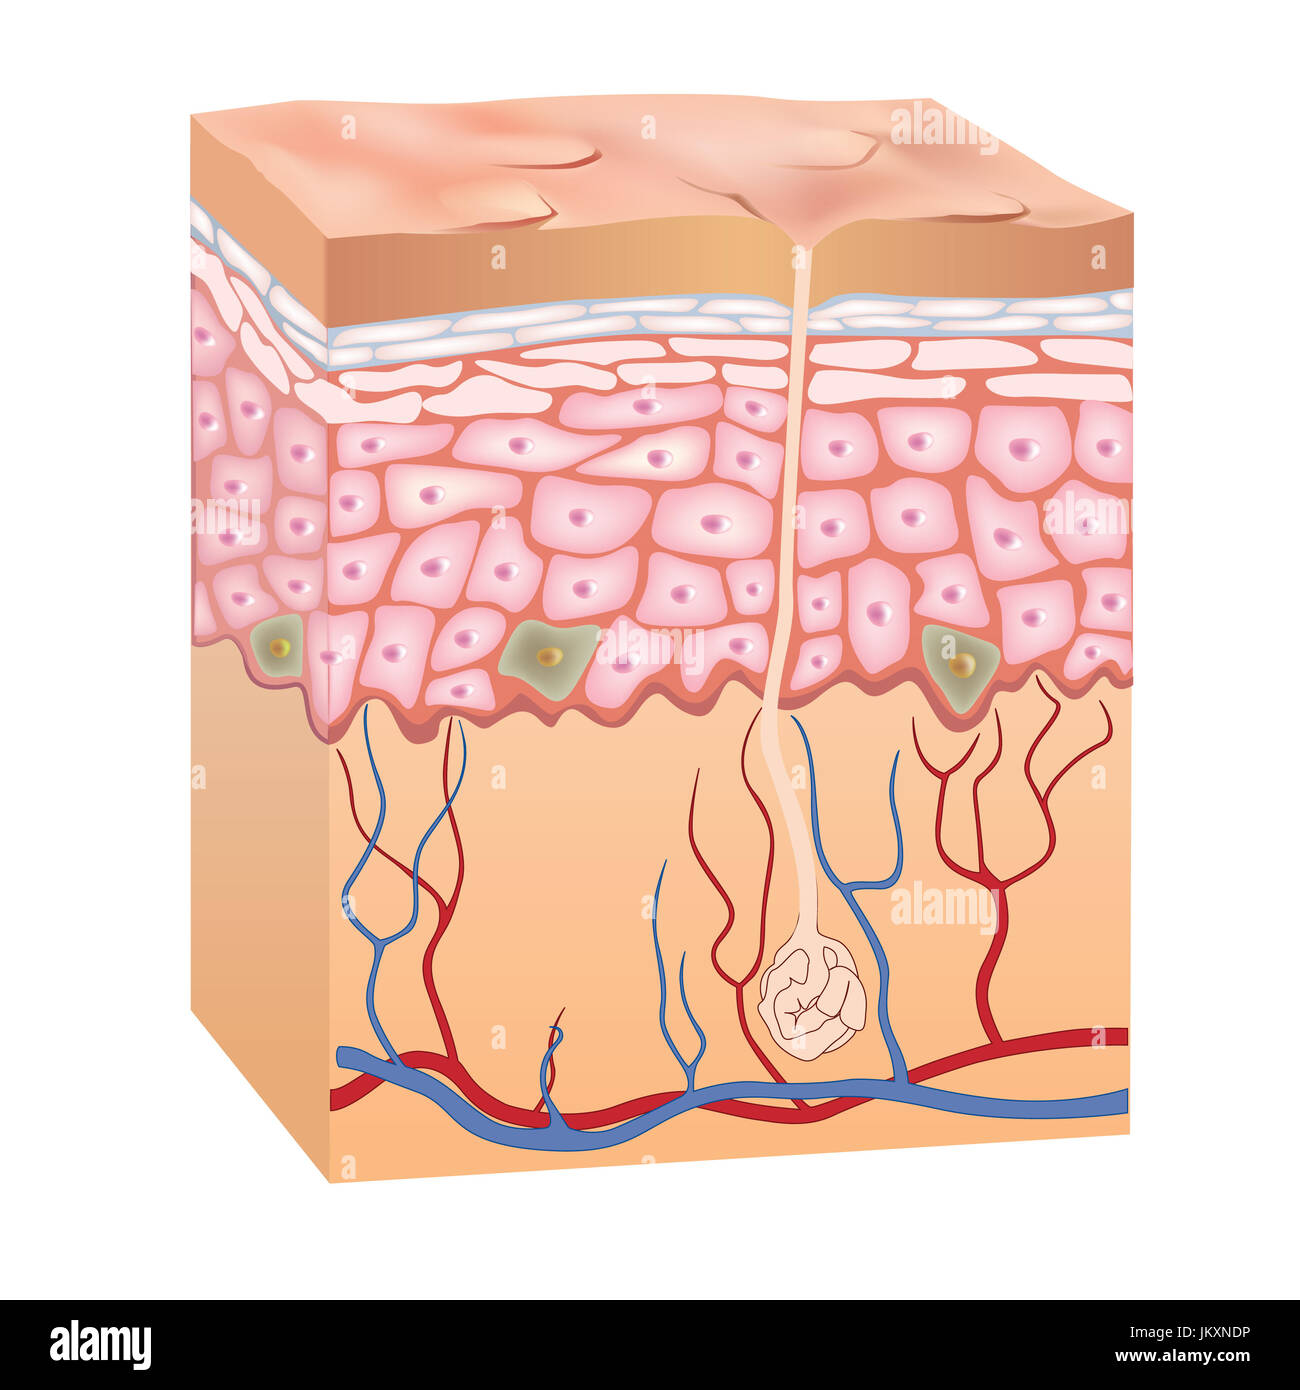 50x agrandie anatomiques de la peau humaine modèle Science 